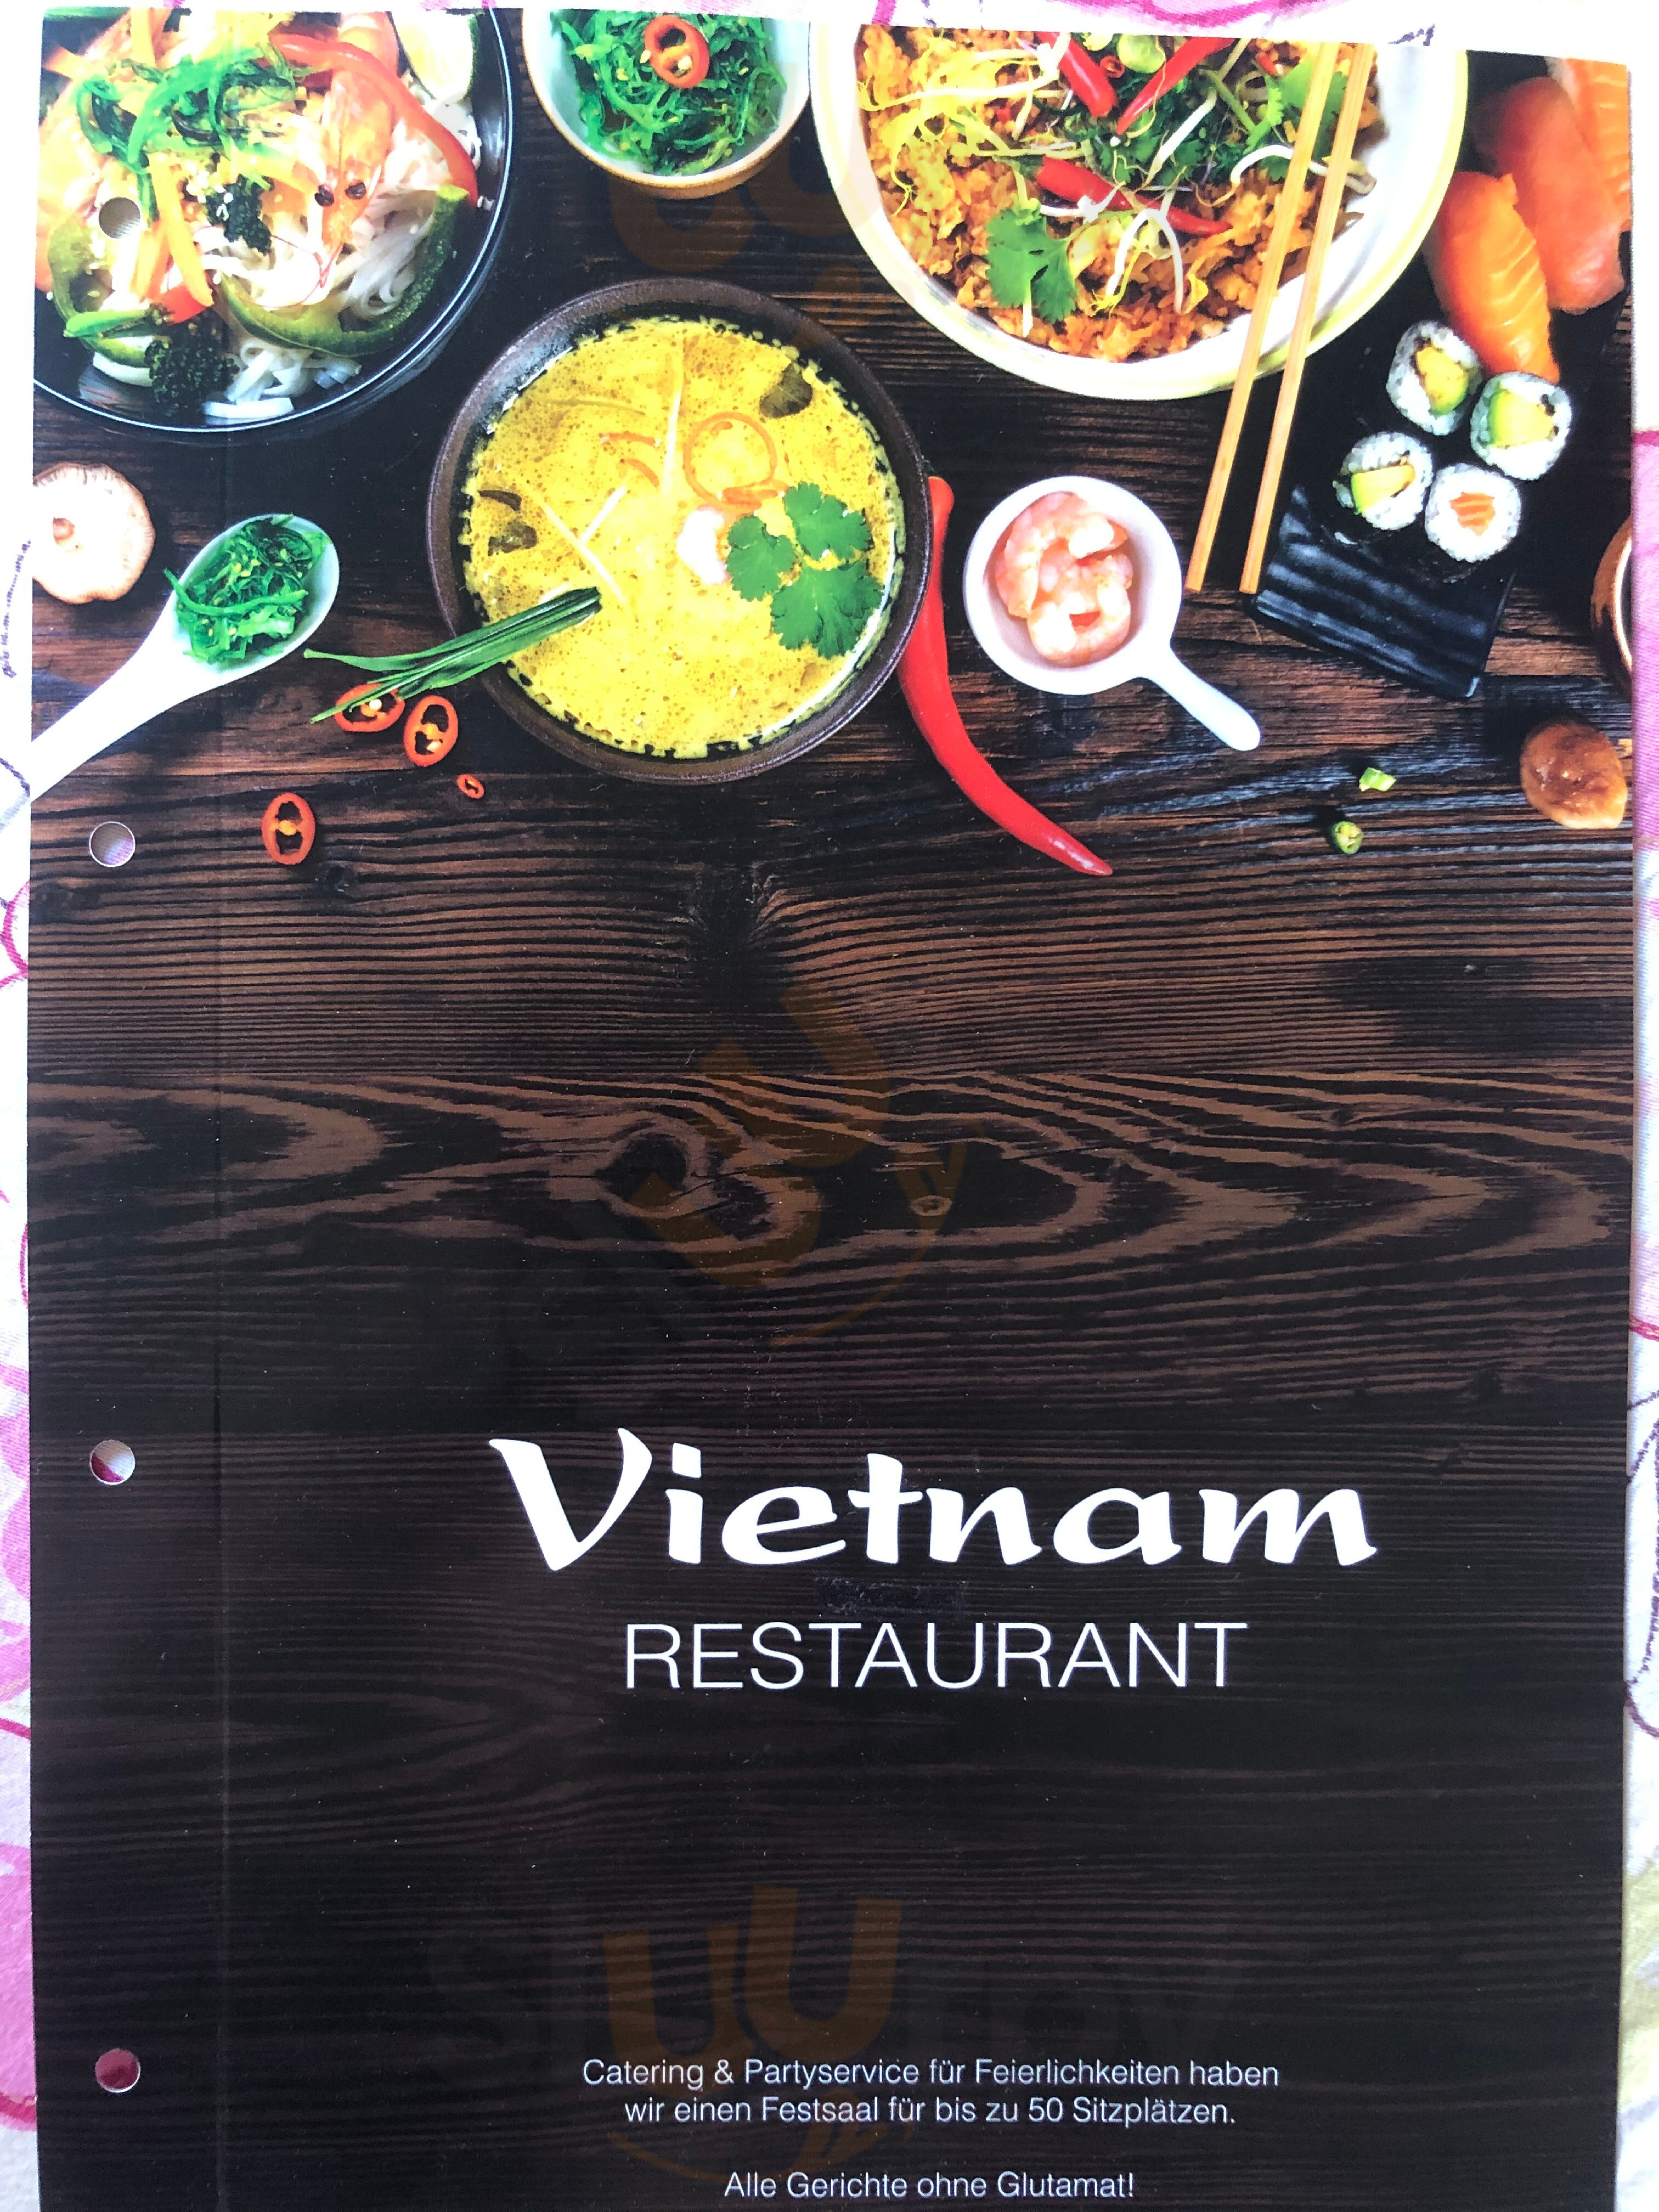 Vietnam Restaurant & Sushibar Berlin Menu - 1